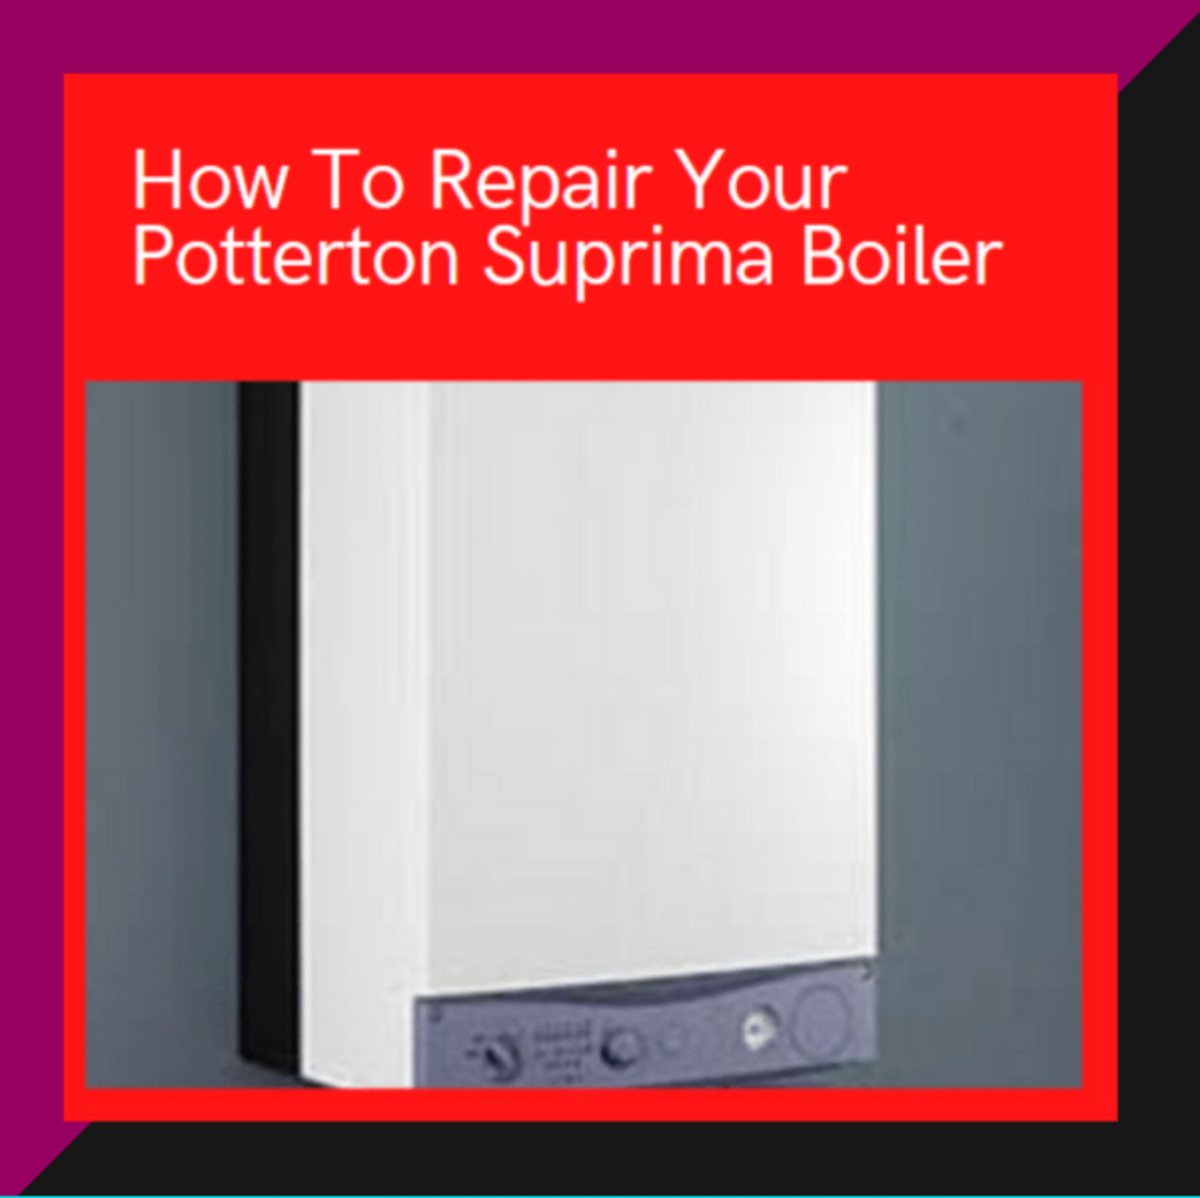 How To Repair Your Potterton Suprima Boiler.